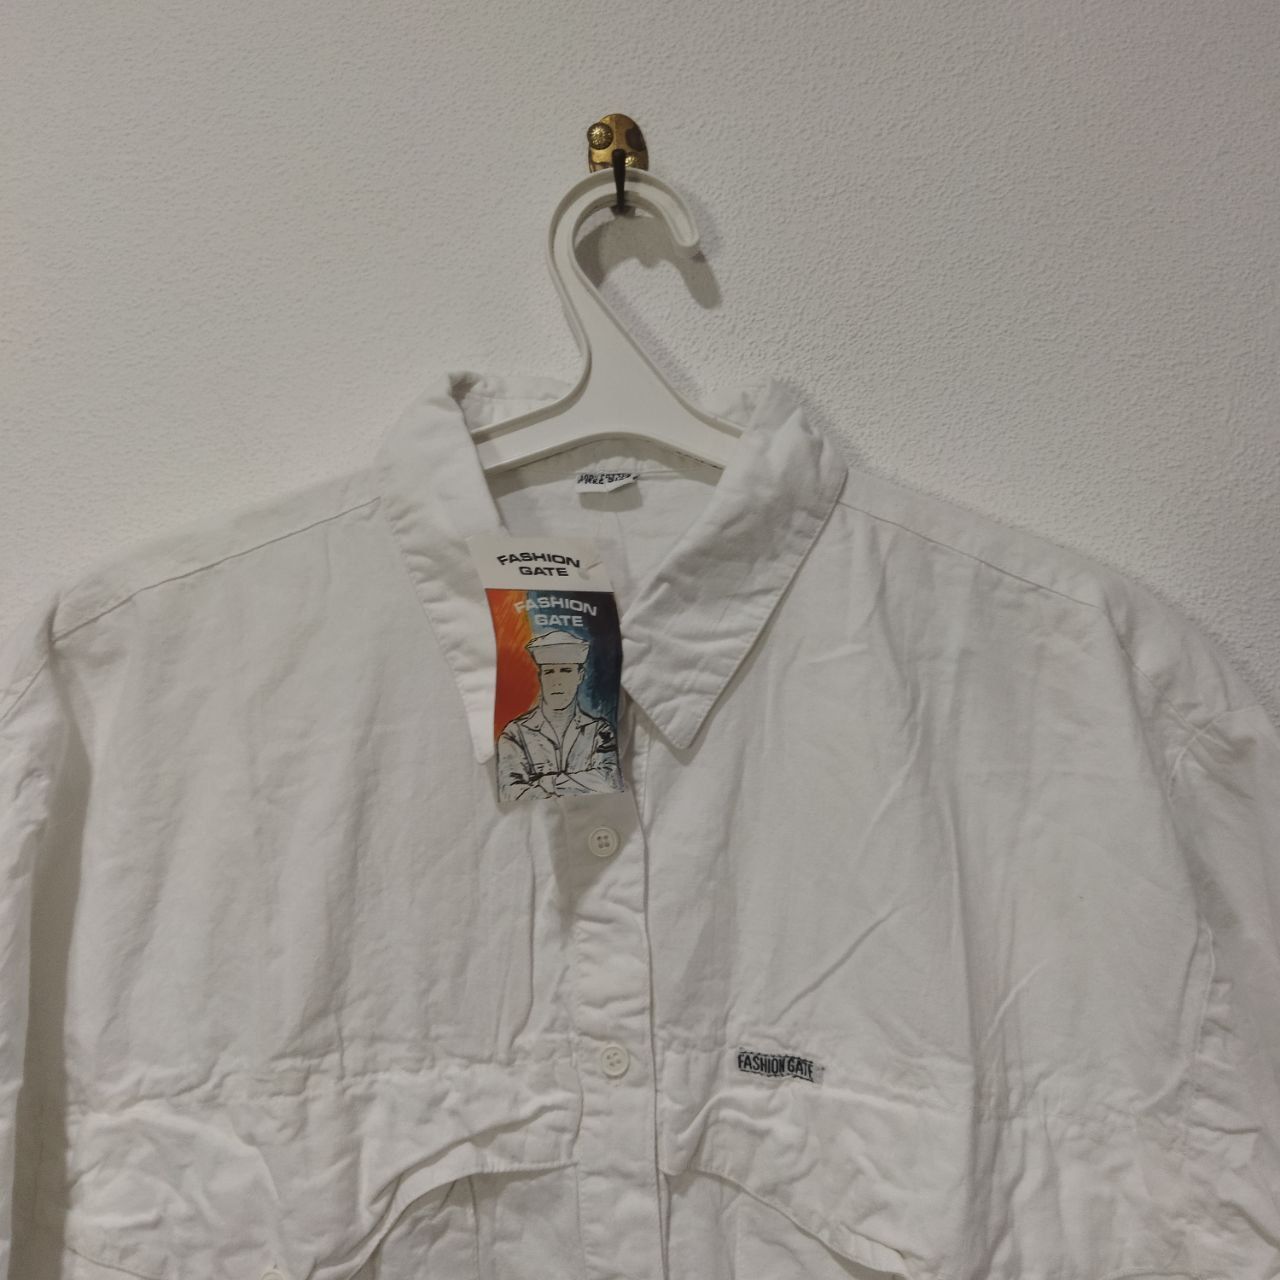 НОВАЯ рубашка белая плотный хлопок Fashion Gate нарядная матроска моря